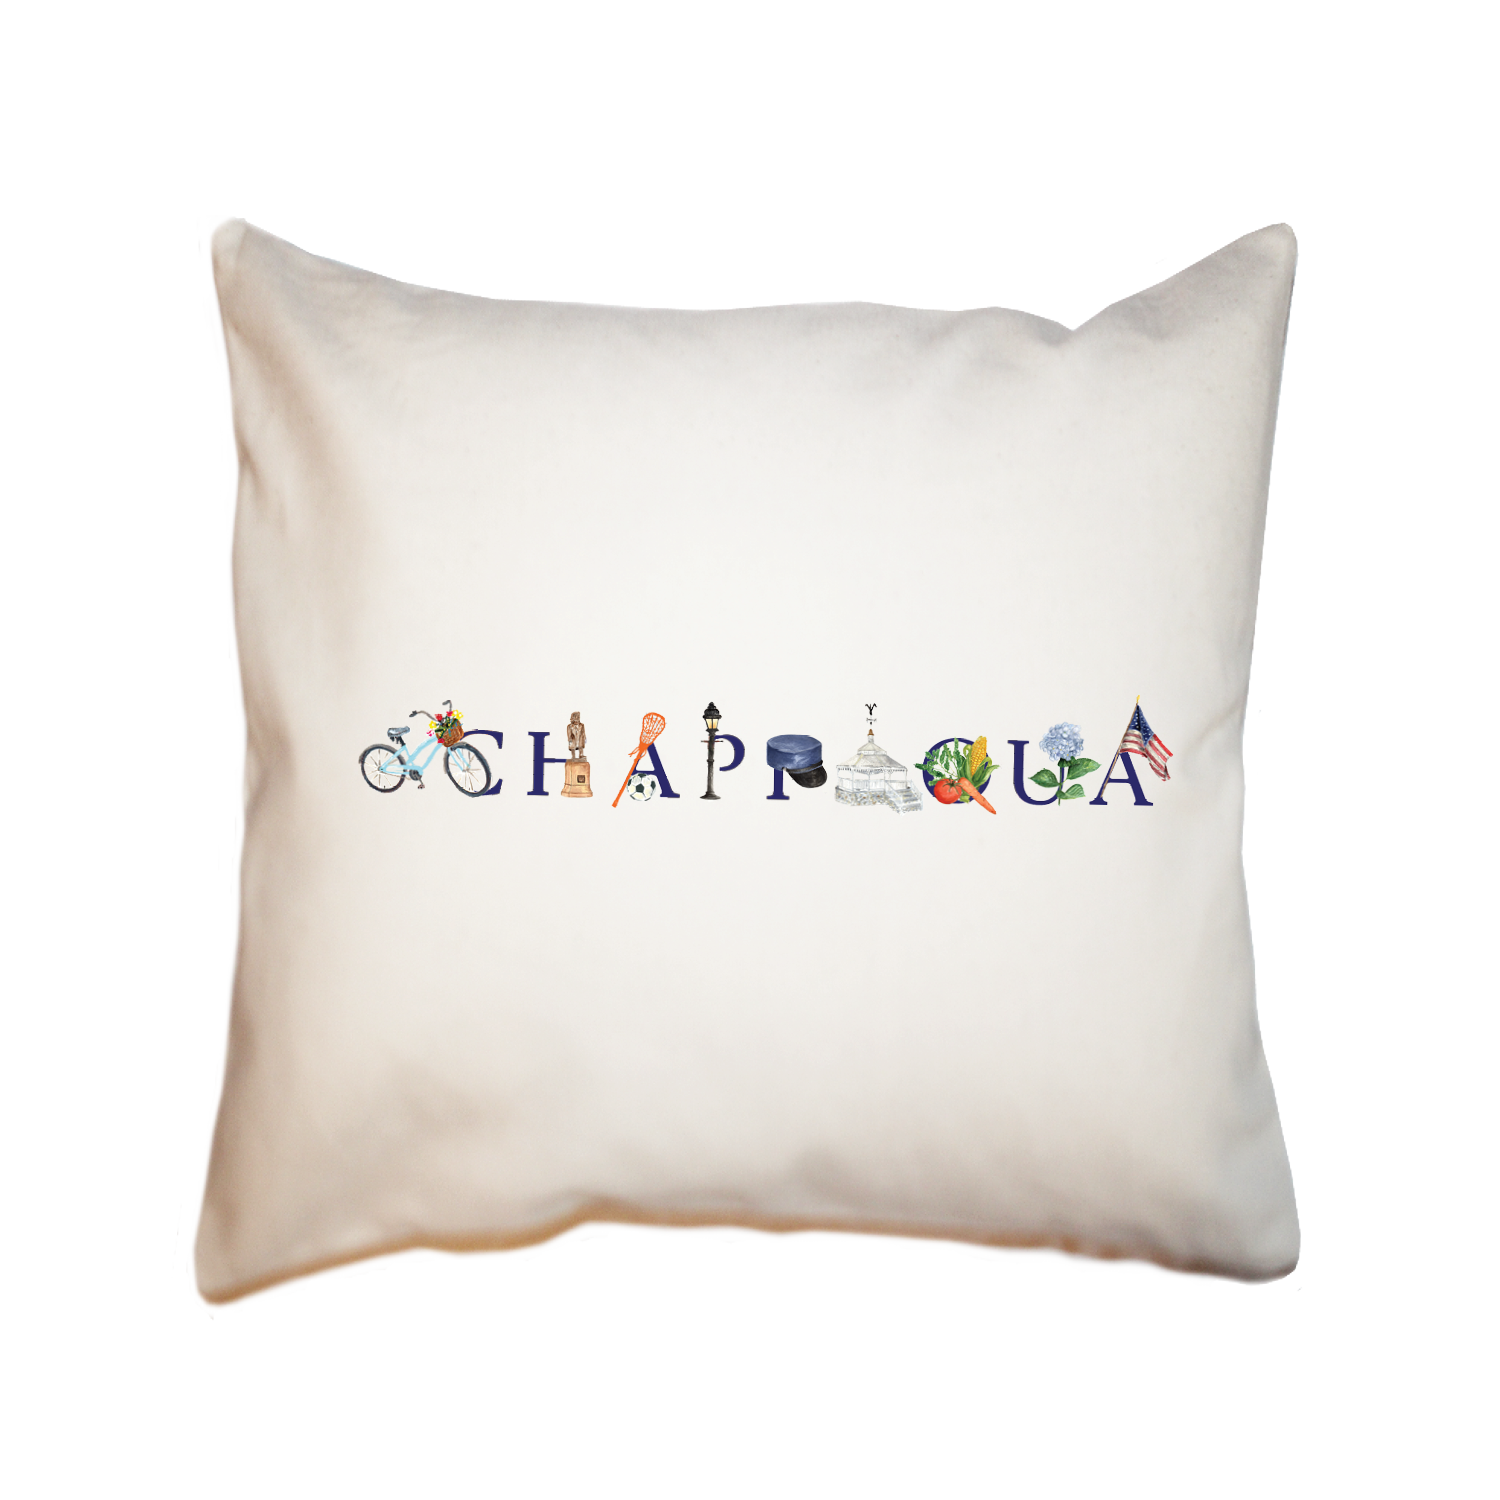 chappaqua square pillow